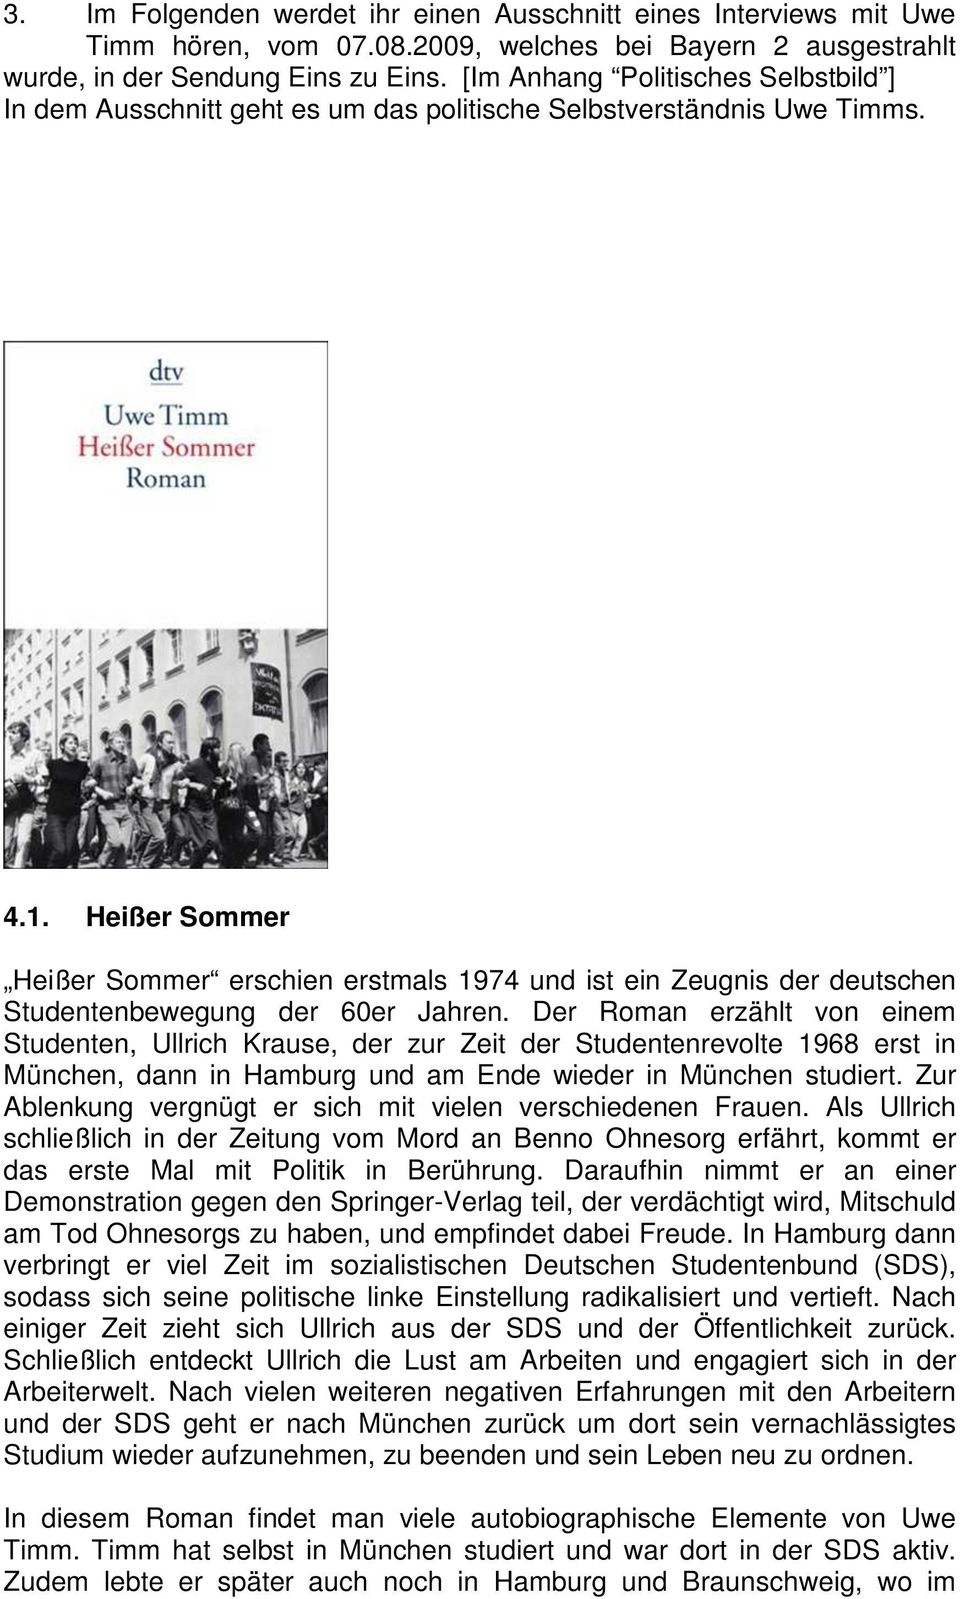 Heißer Sommer Heißer Sommer erschien erstmals 1974 und ist ein Zeugnis der deutschen Studentenbewegung der 60er Jahren.